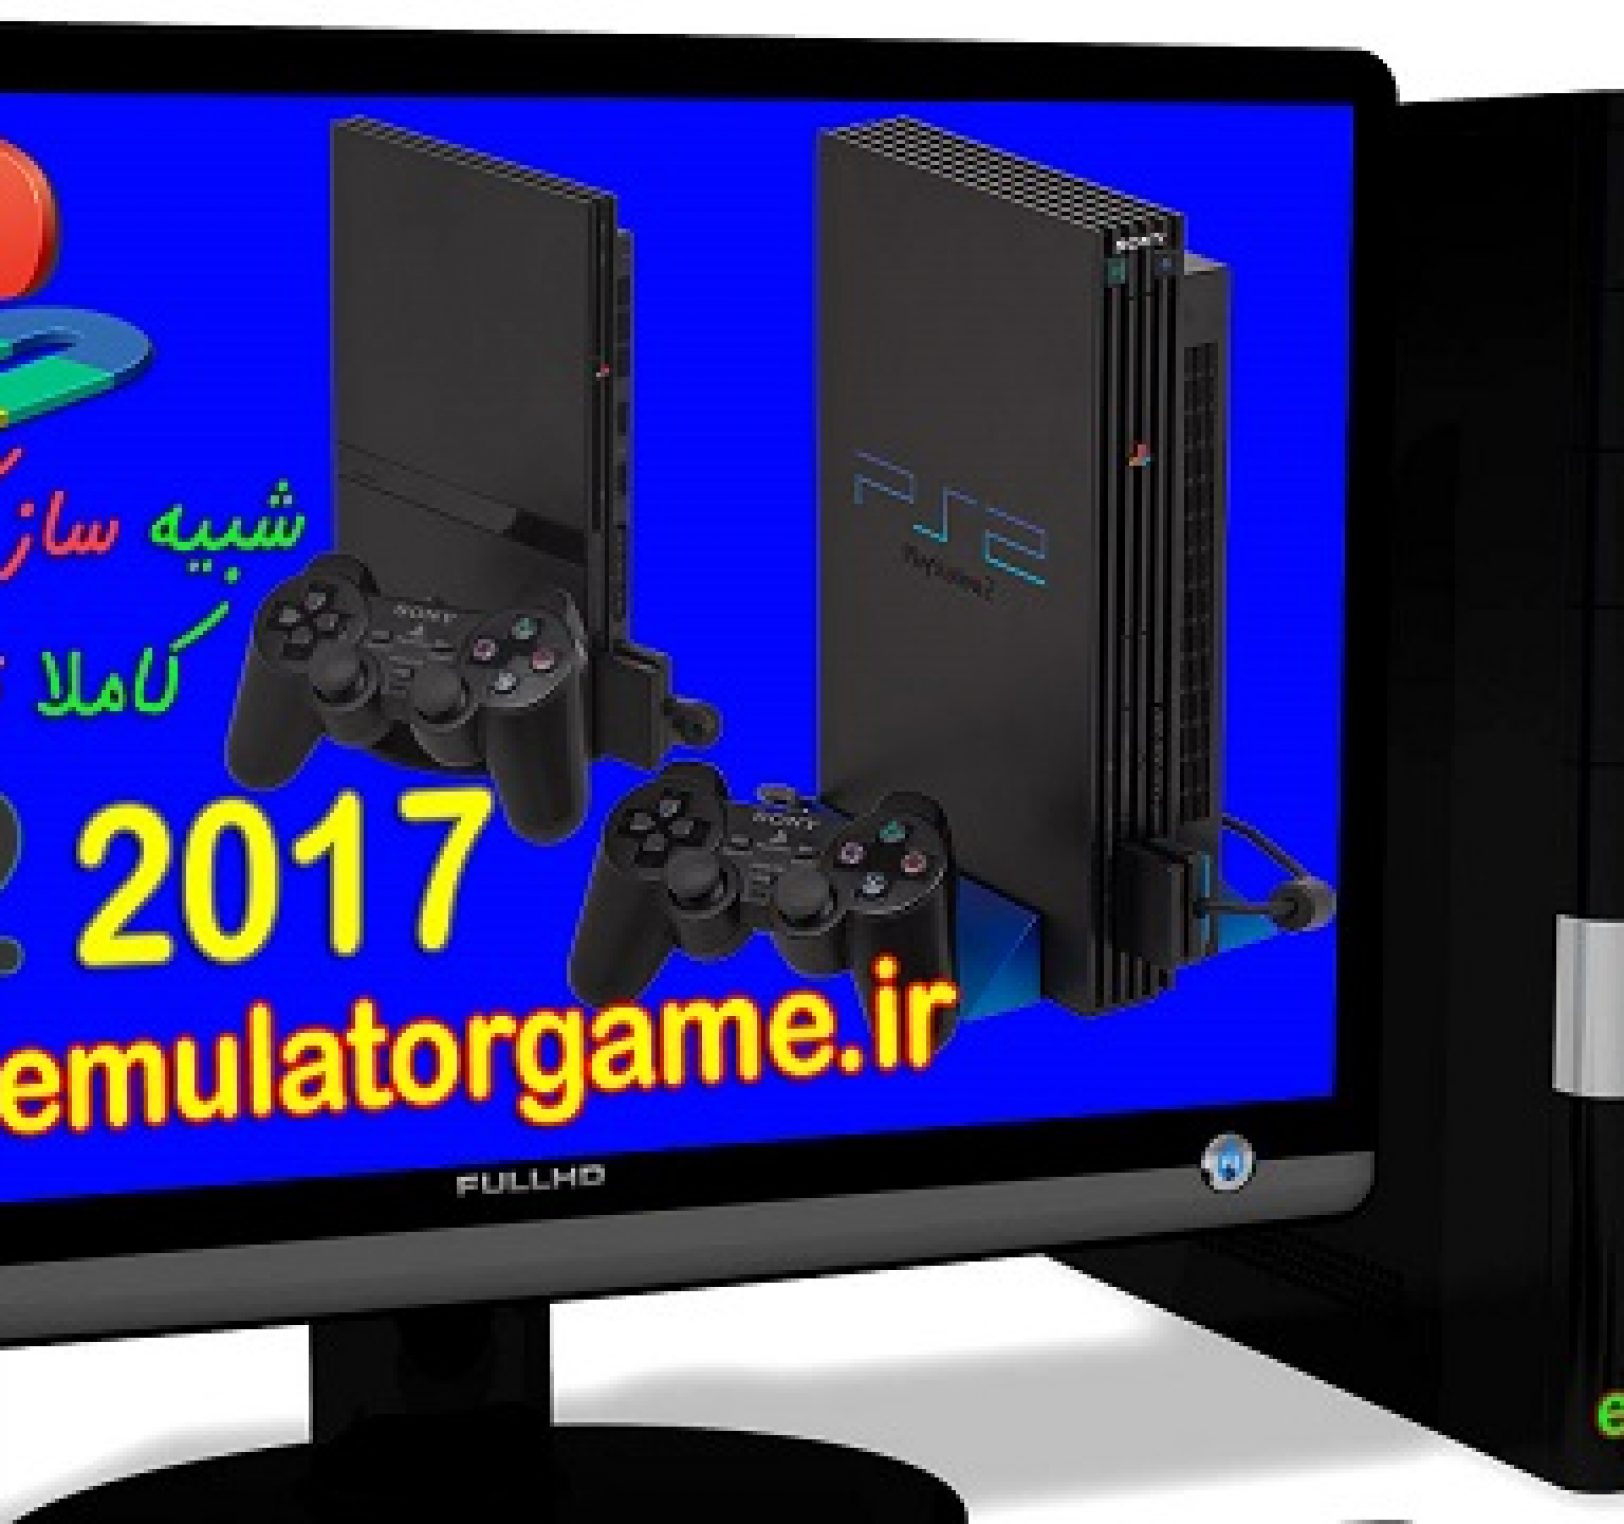 دانلود شبیه ساز Emulator ps2 کامپیوتر 2017 [جدید]